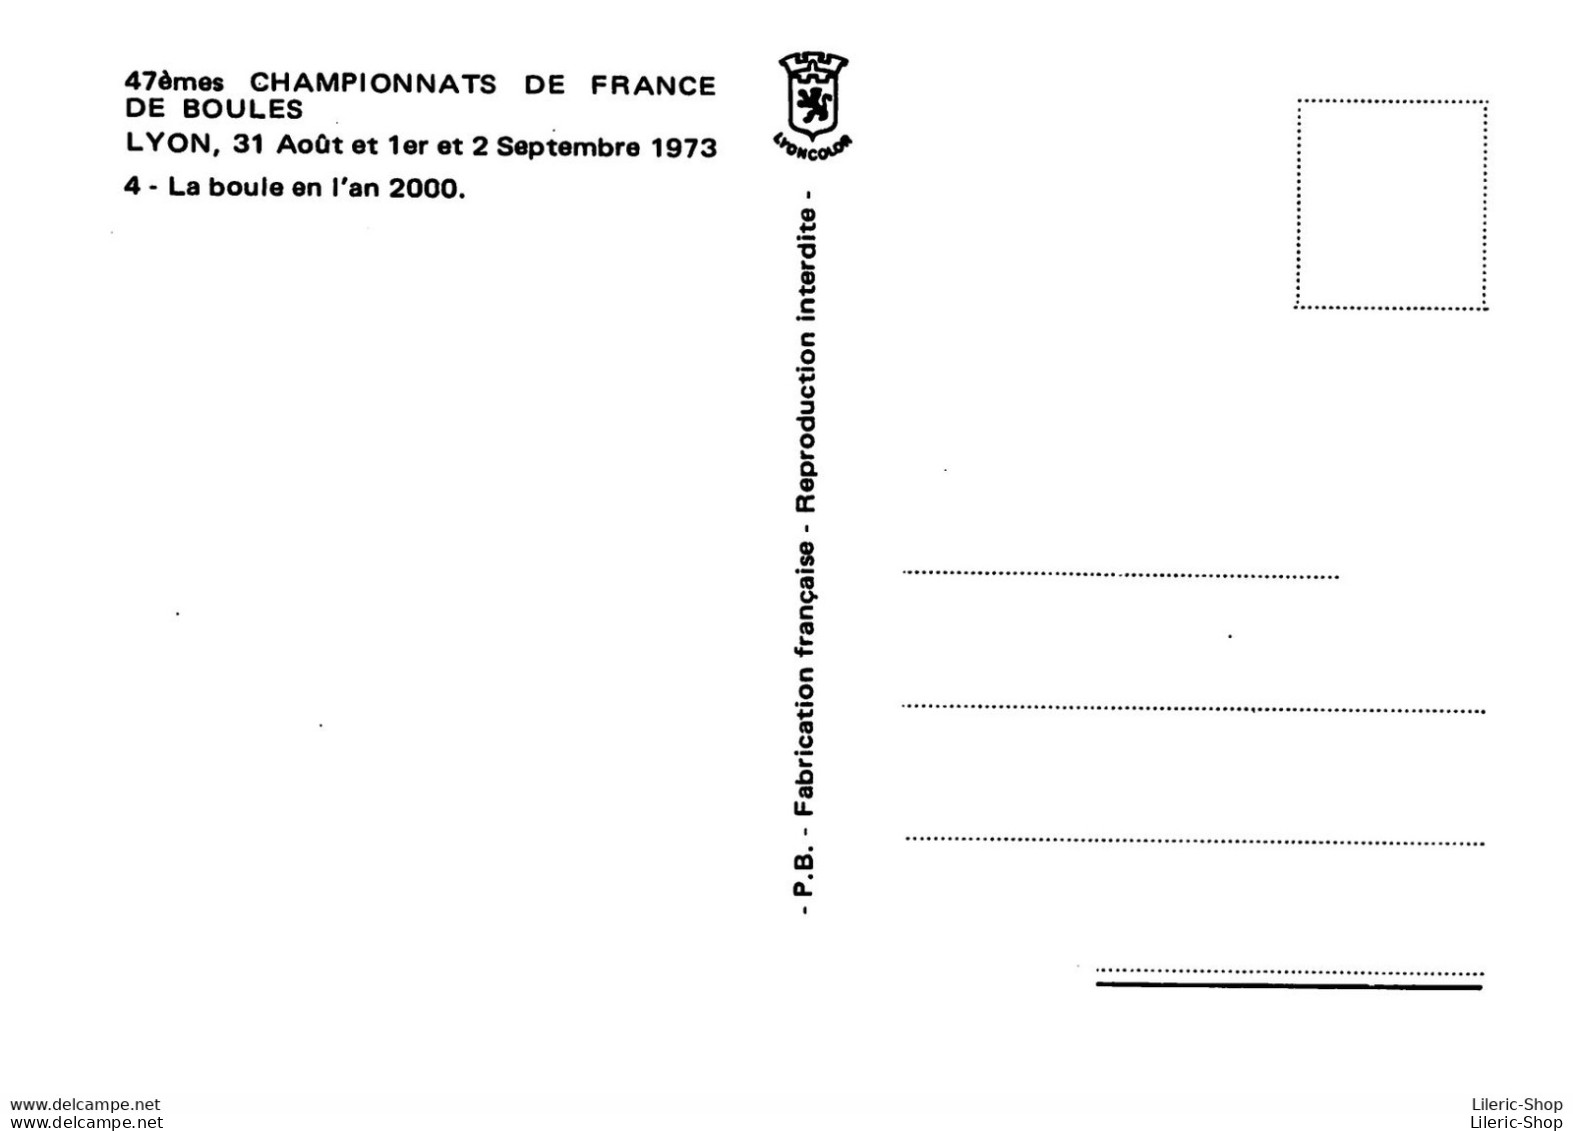 47 EMES CHAMPIONNAT DE FRANCE LYON AOUT 1973 LA BOULE DE L AN 2000 DESSIN ROGERSAM - Bowls